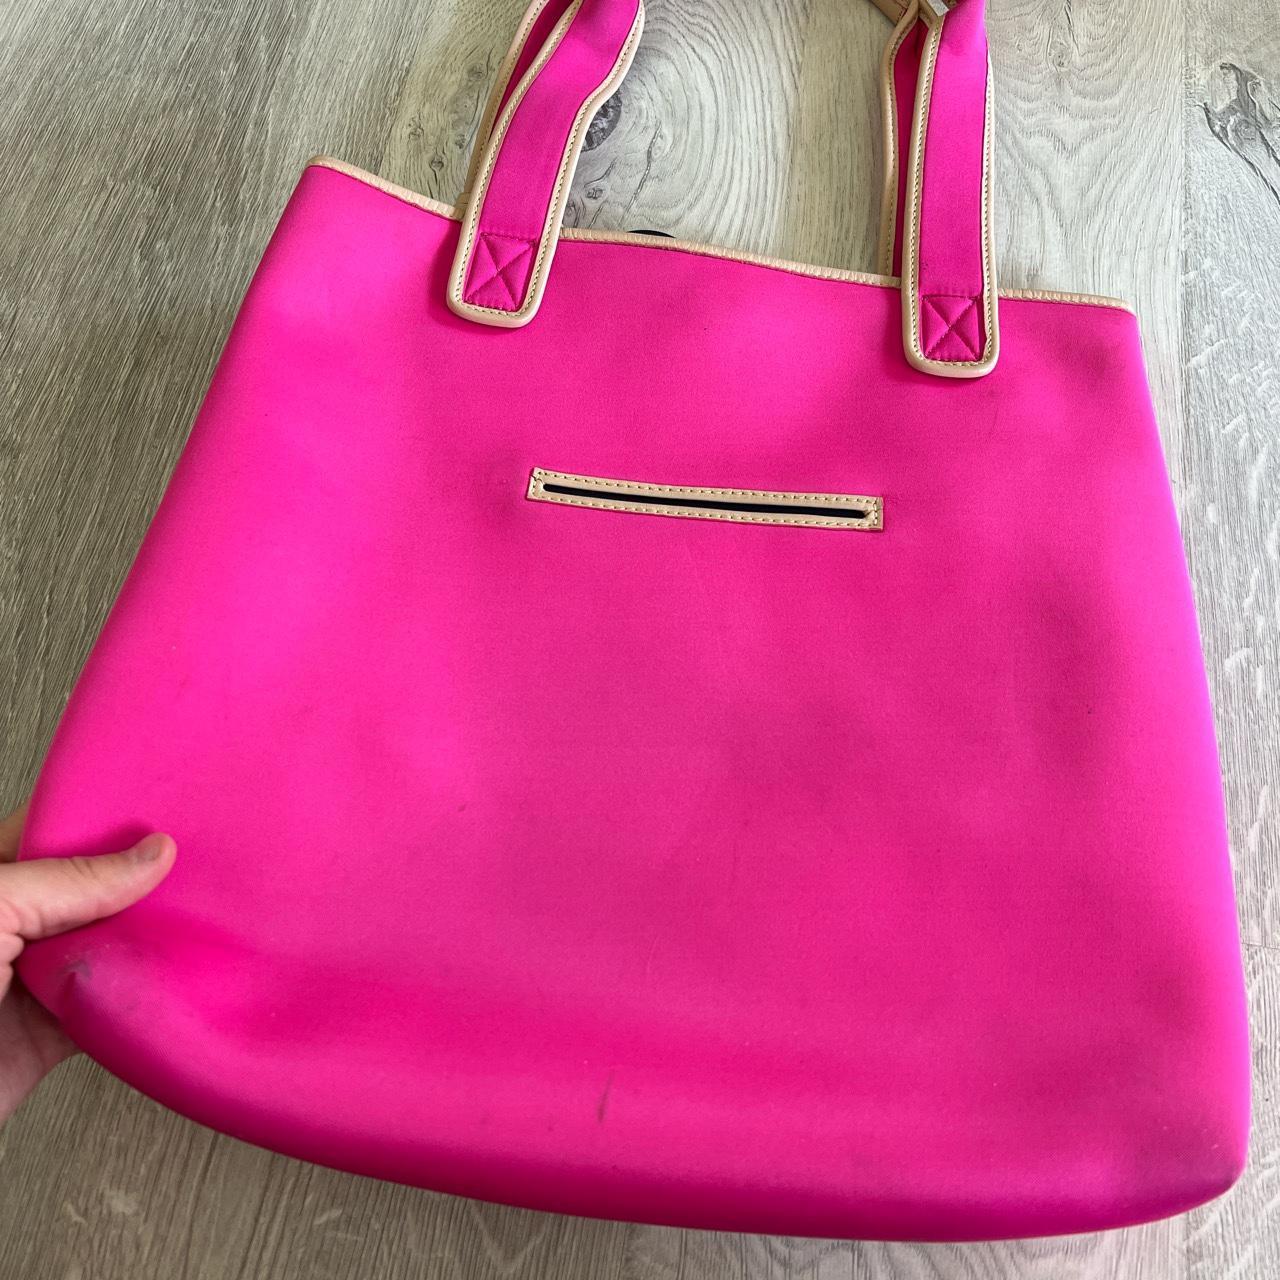 Buy Juicy Couture Women's Satchel Handbag Pink at Amazon.in